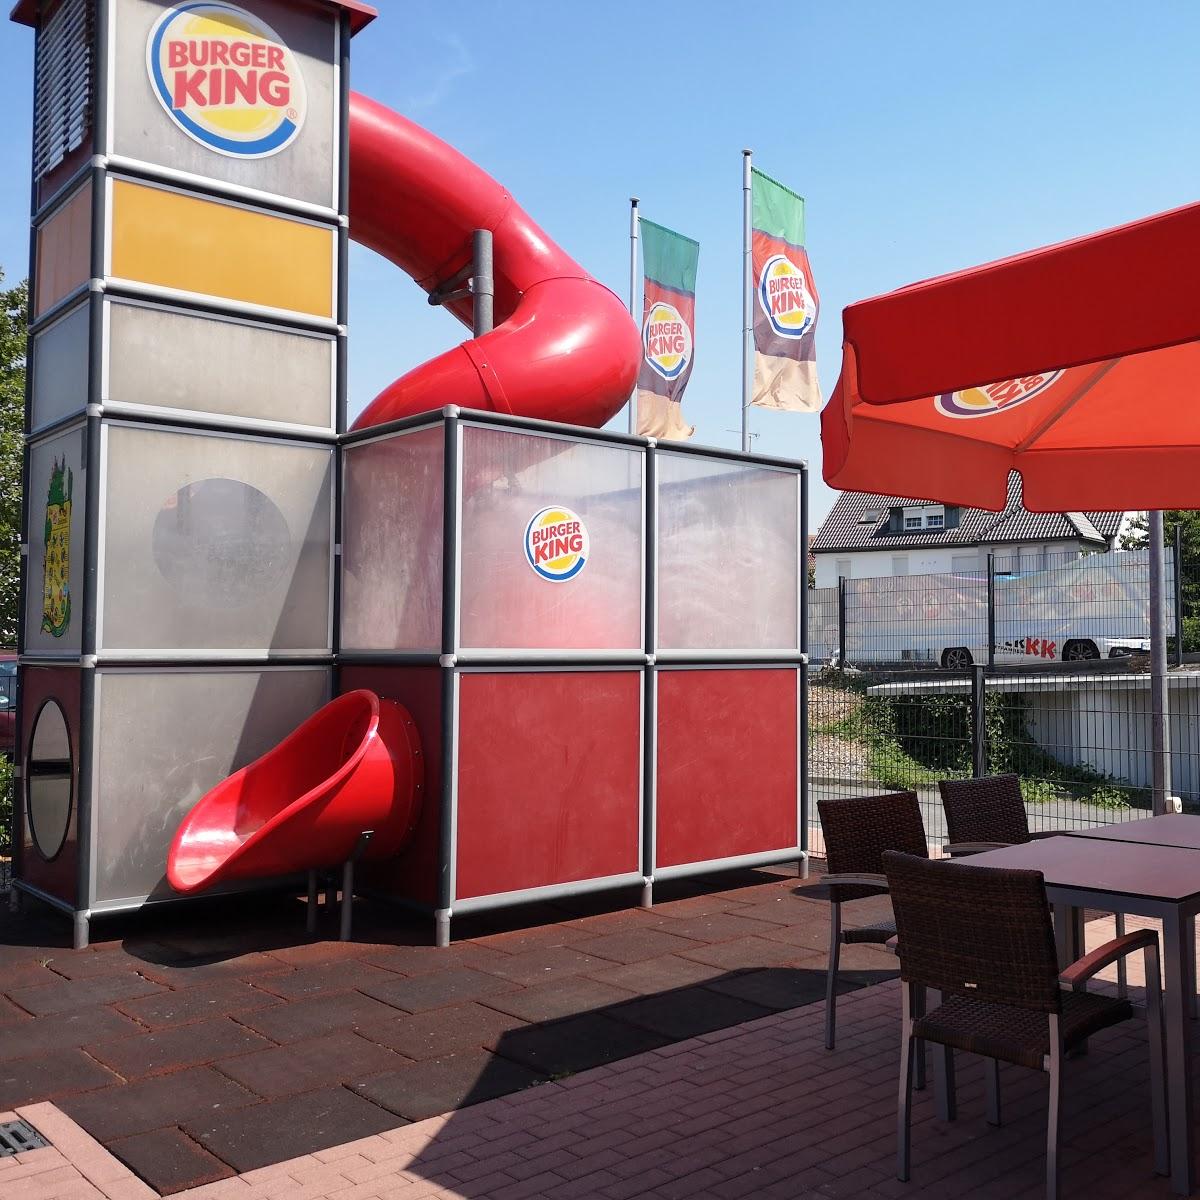 Restaurant "Burger King" in Heilbronn